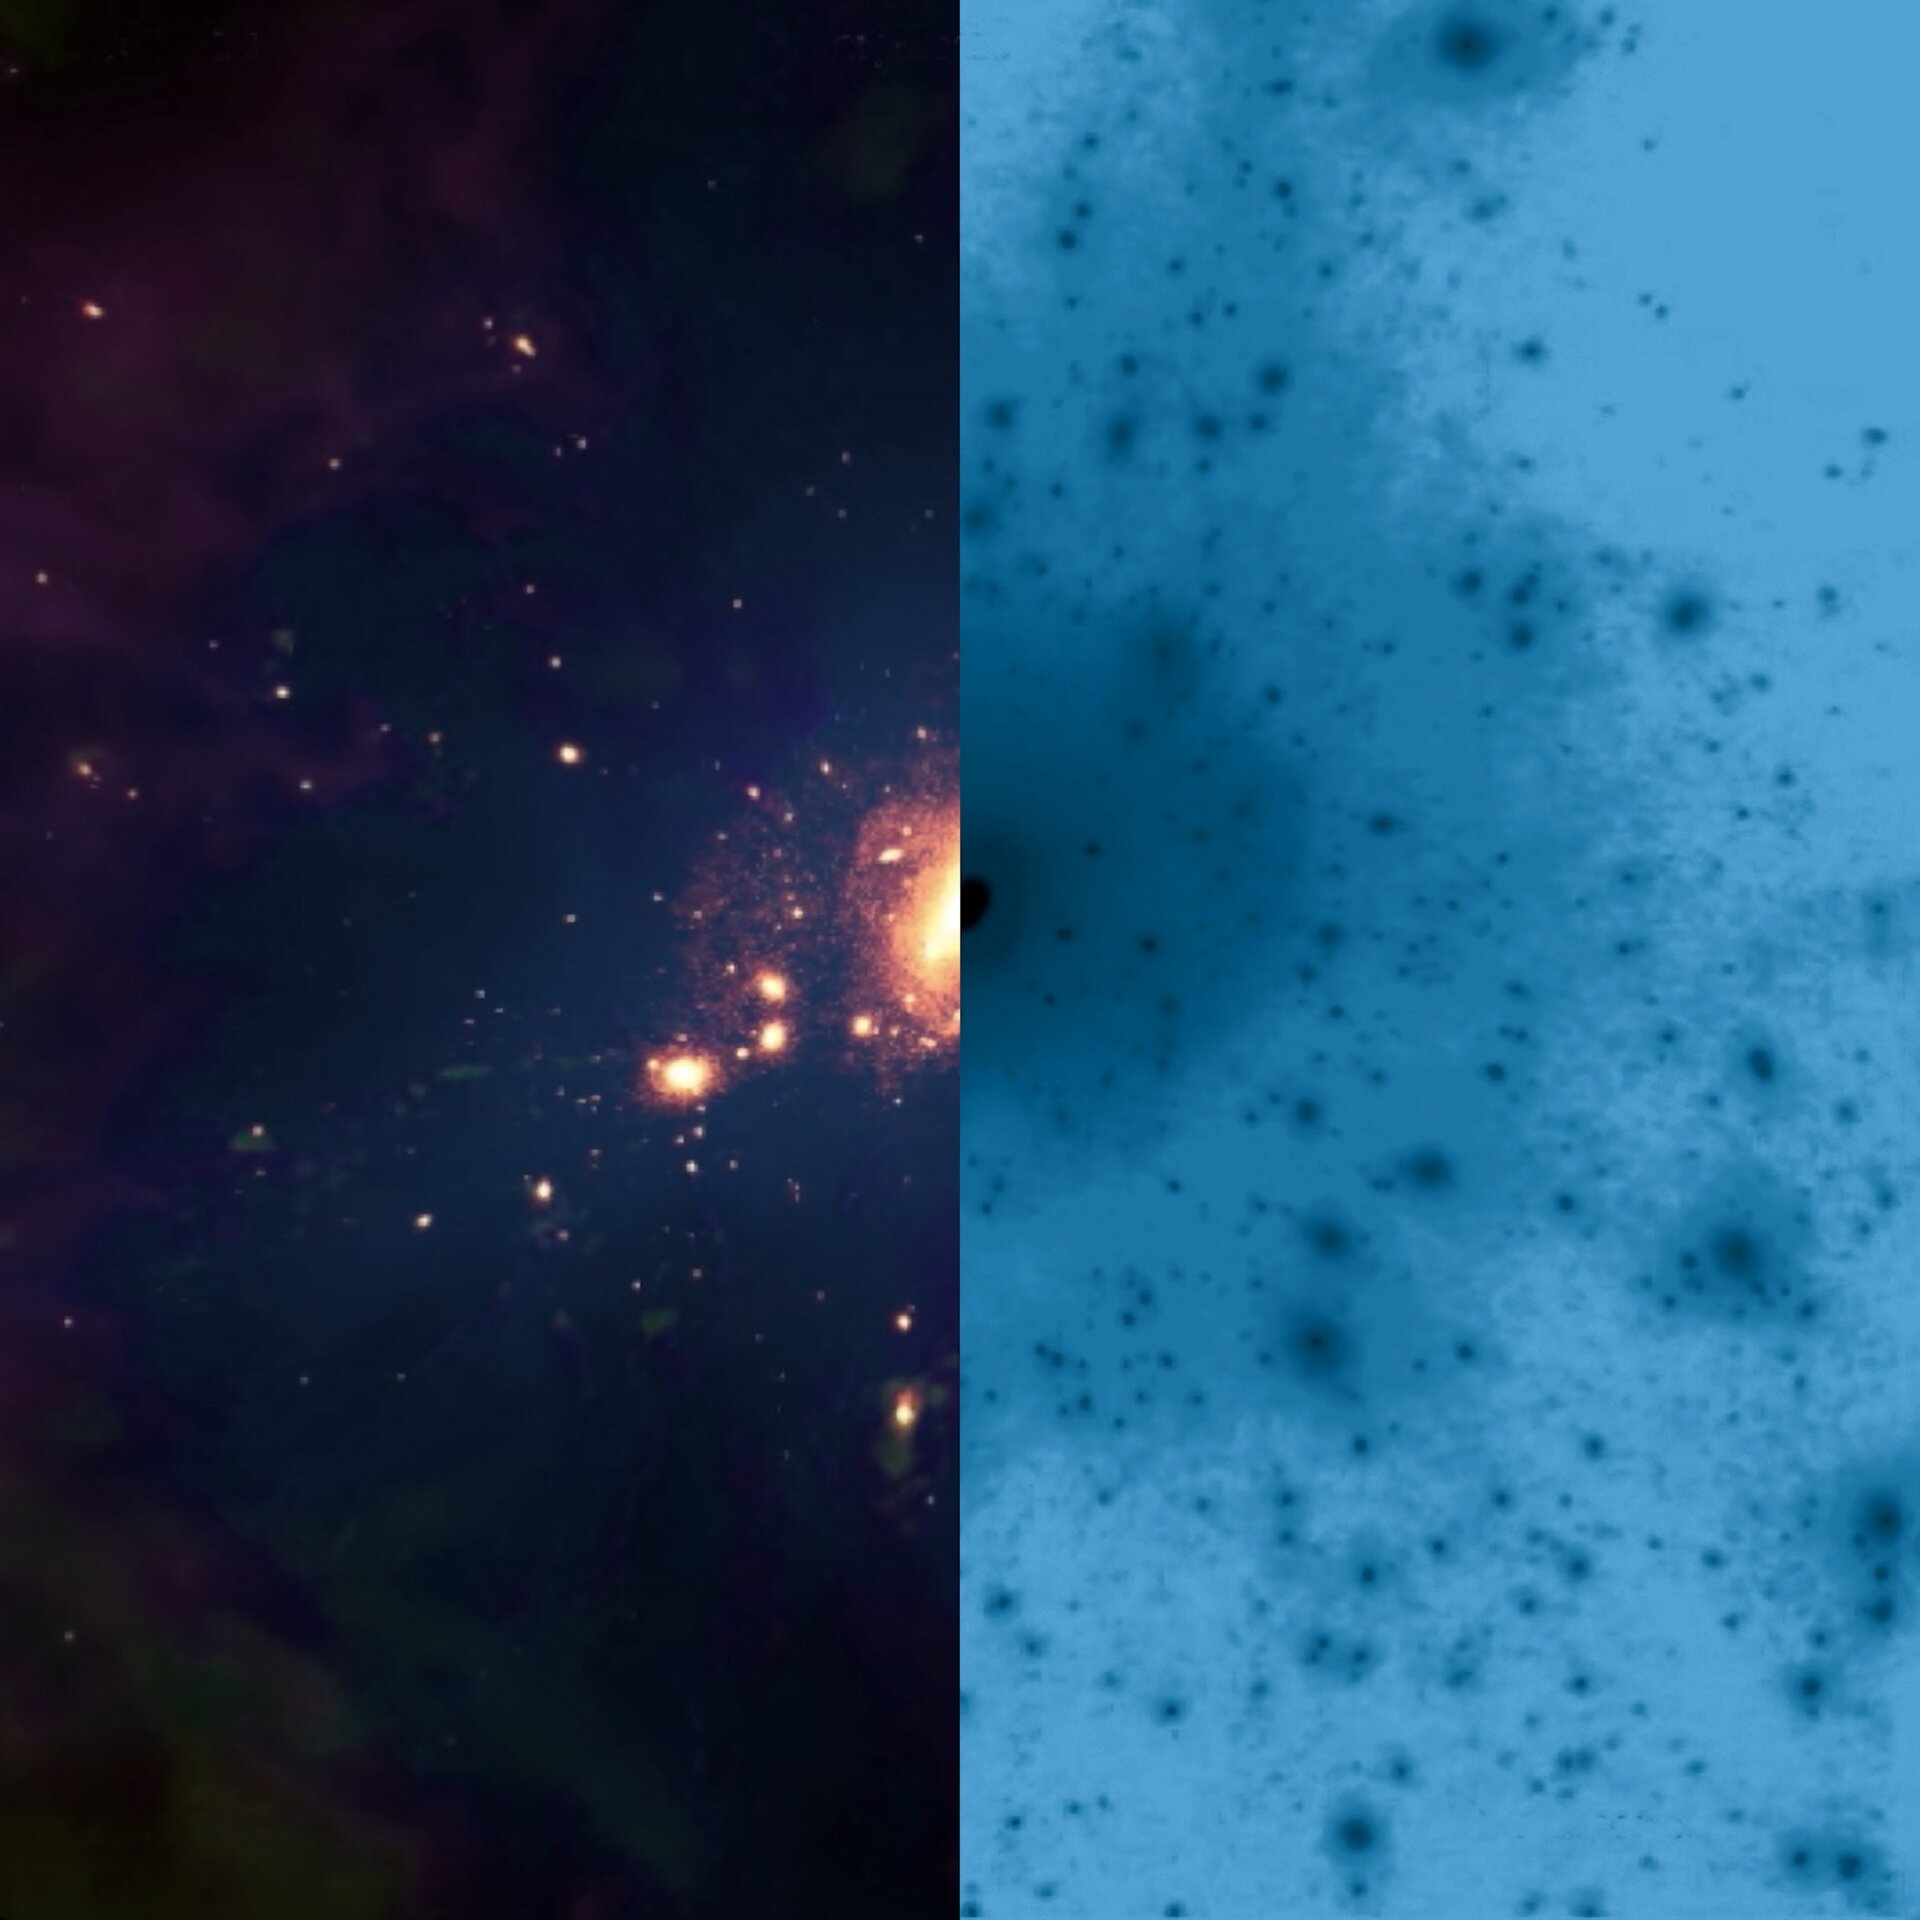 Исследованиям, проведенным командой IAC, удалось впервые подтвердить с помощью наблюдений влияние темной материи на эволюцию галактик